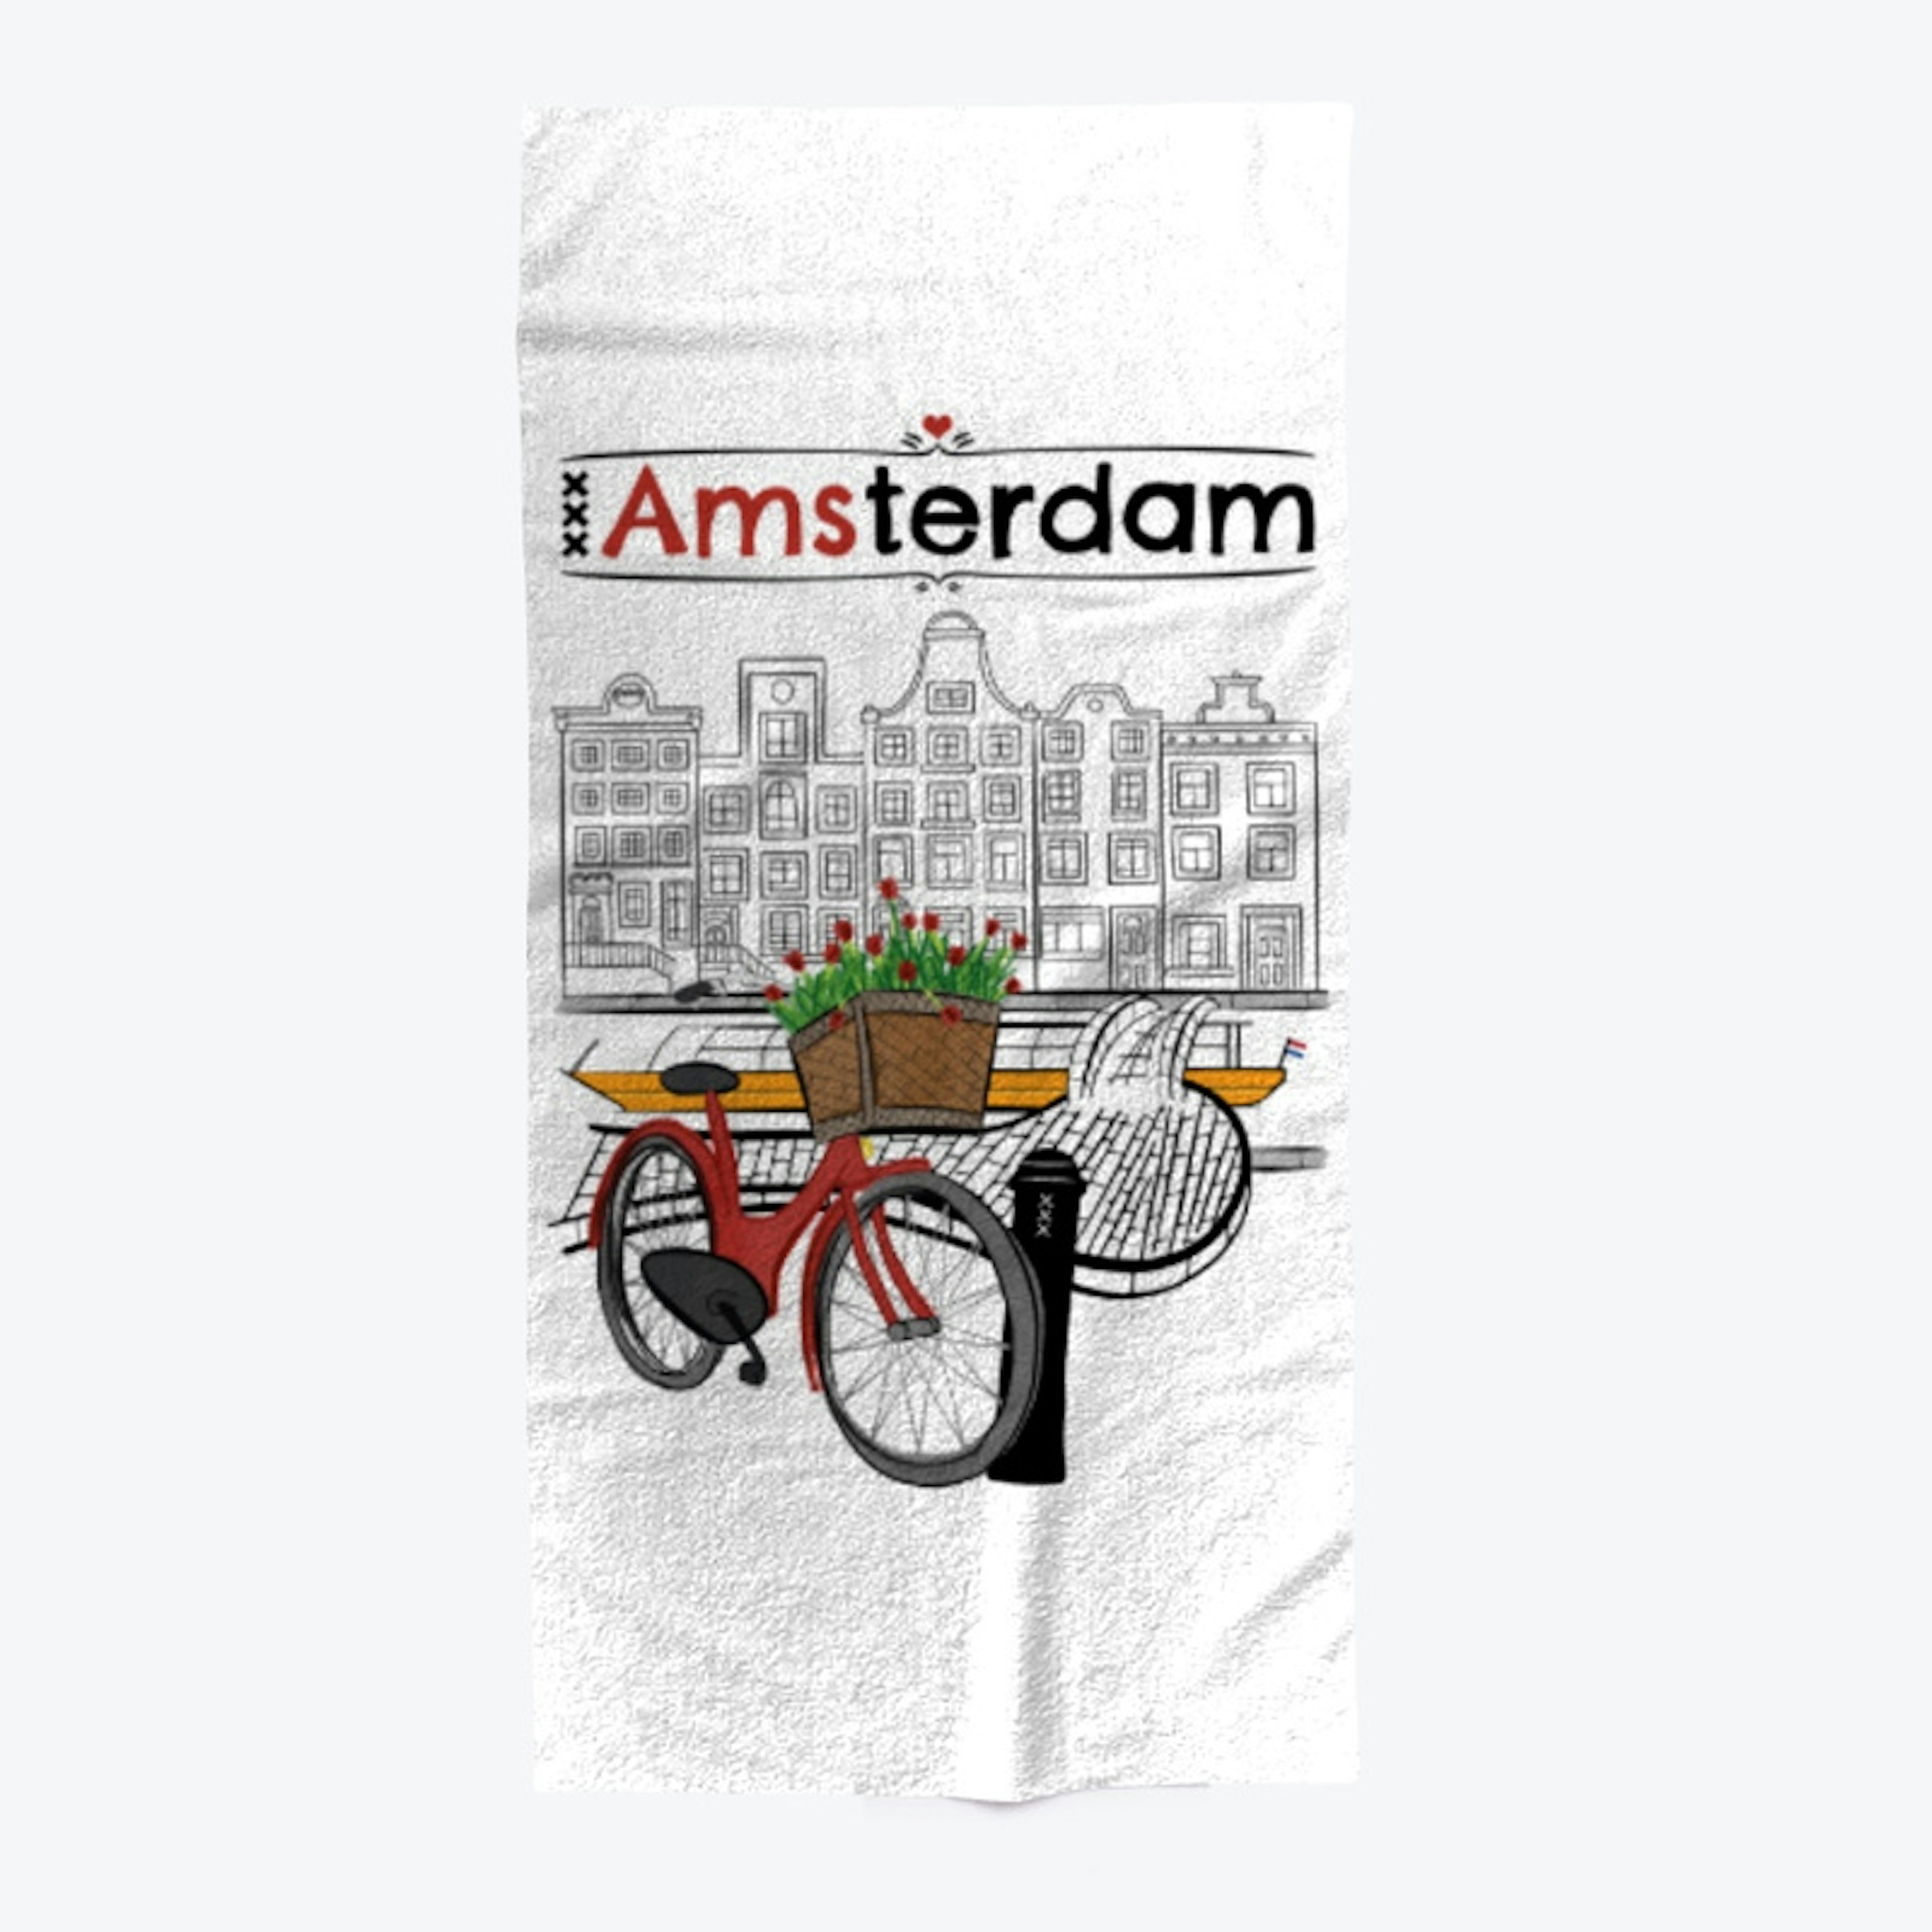 Love Amsterdam! #Holanda